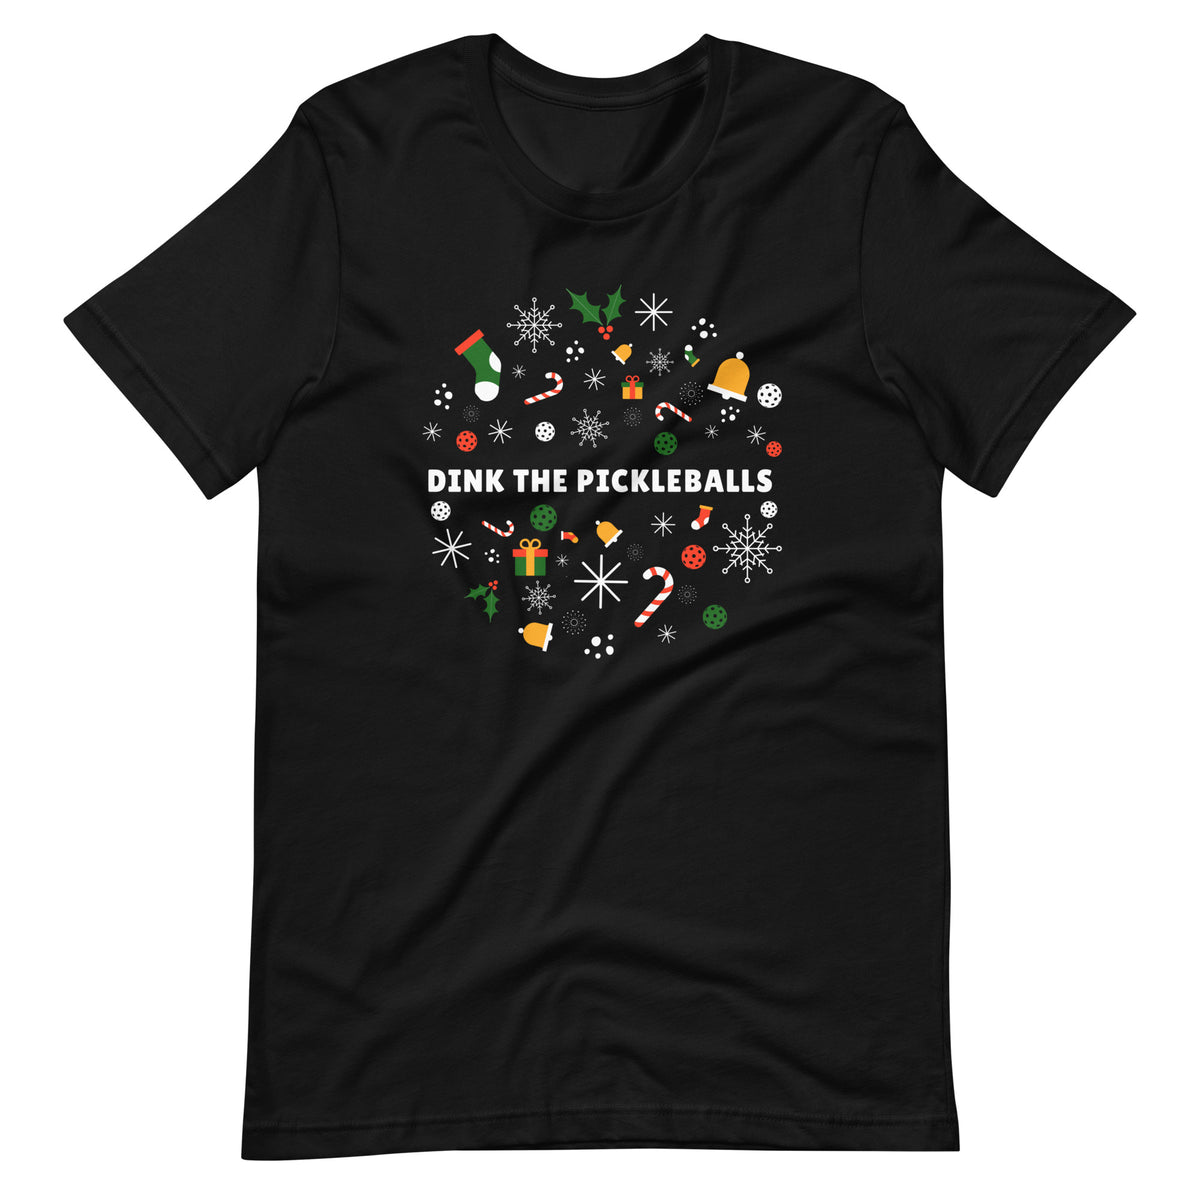 Dink the Pickleballs T-shirt